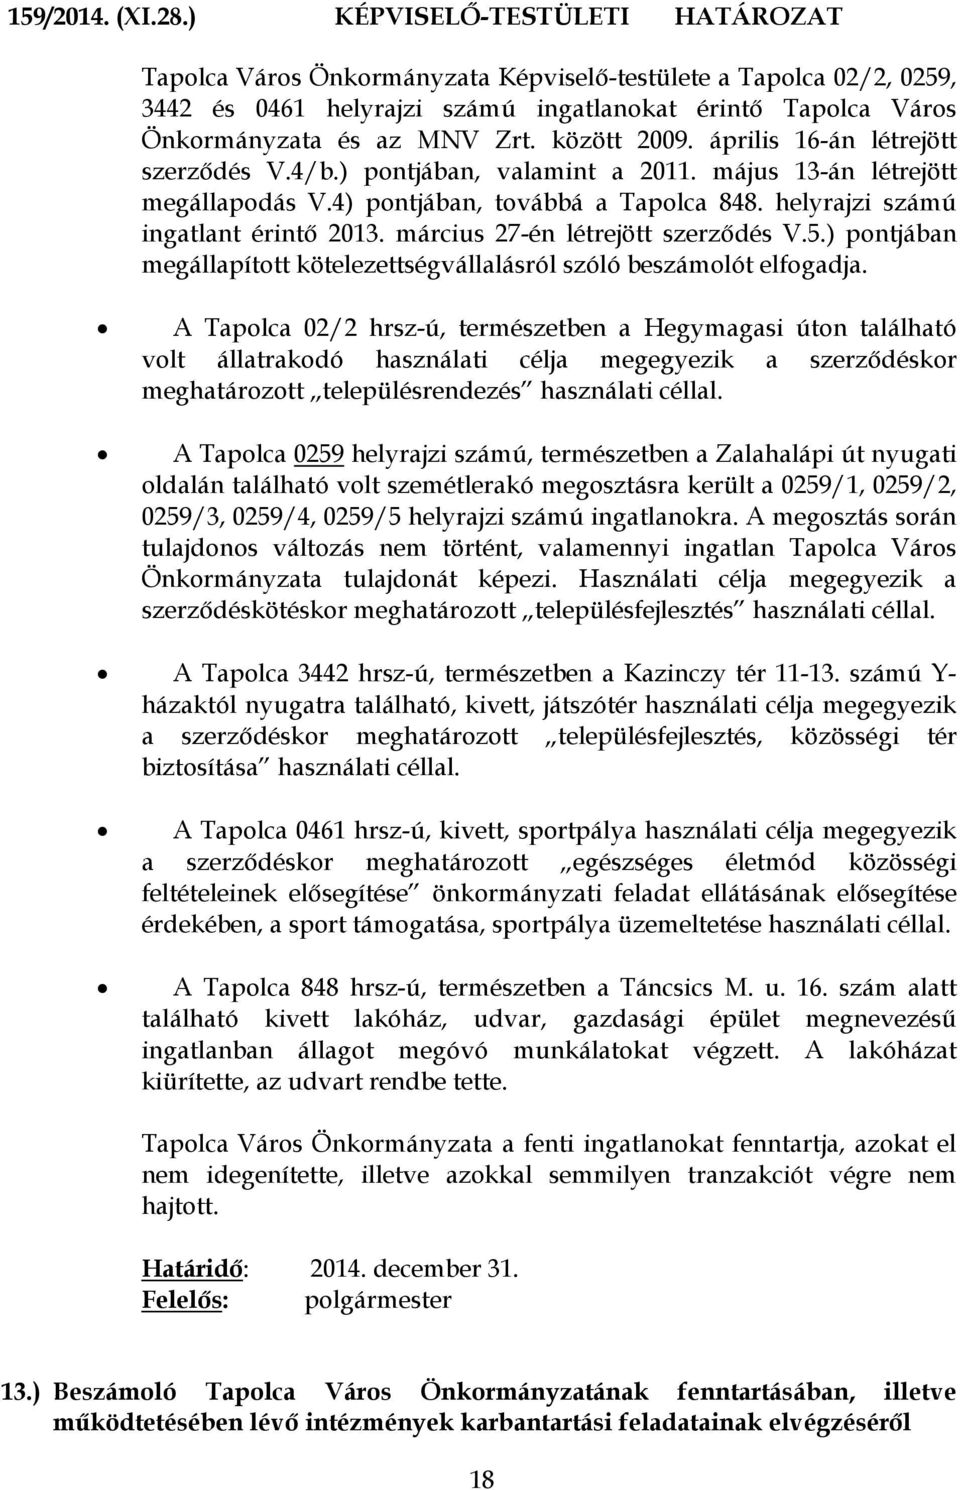 között 2009. április 16-án létrejött szerződés V.4/b.) pontjában, valamint a 2011. május 13-án létrejött megállapodás V.4) pontjában, továbbá a Tapolca 848. helyrajzi számú ingatlant érintő 2013.